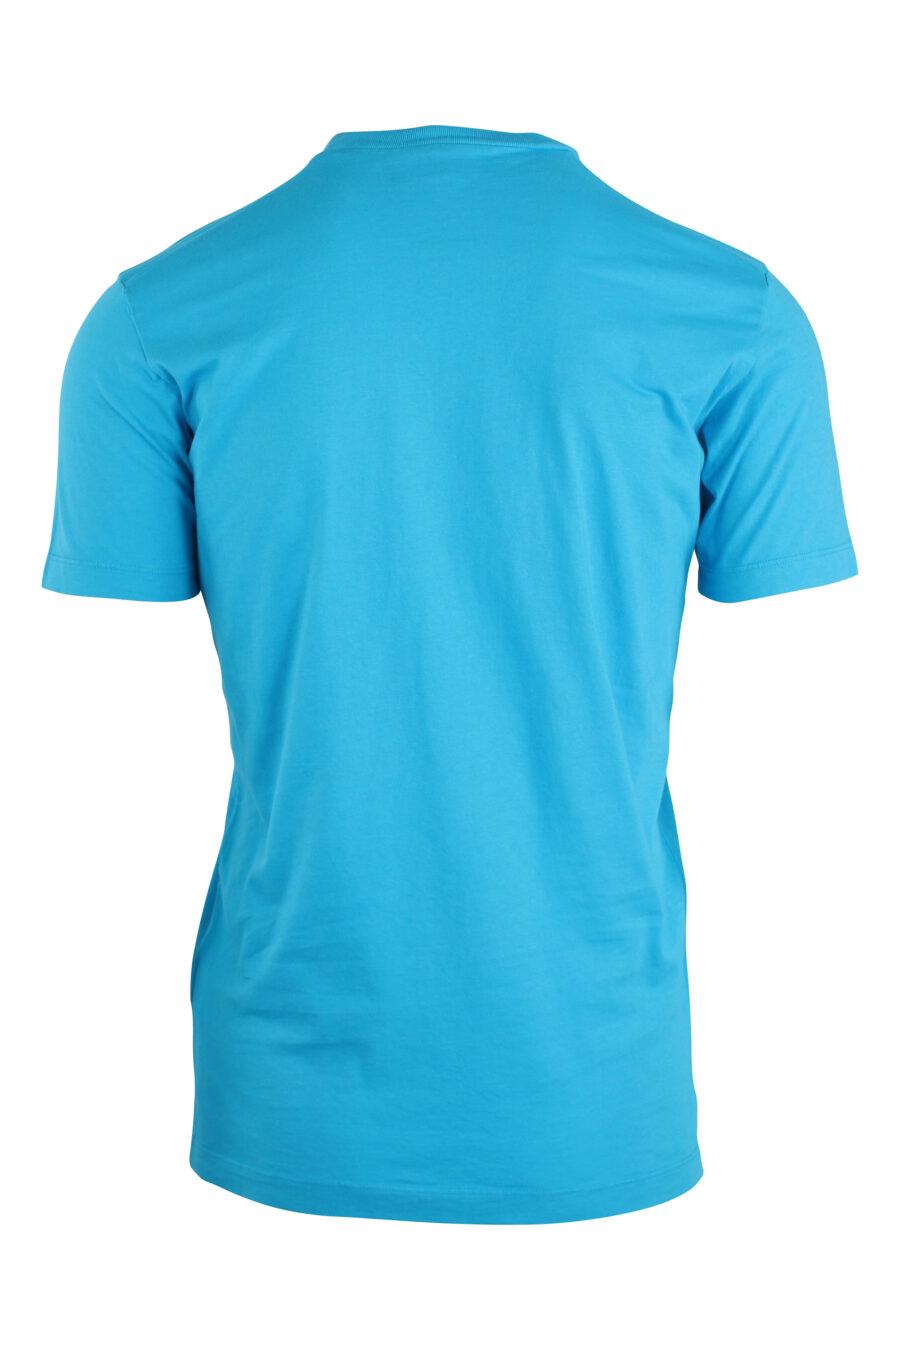 T-shirt bleu clair avec maxilogue jaune - IMG 8922